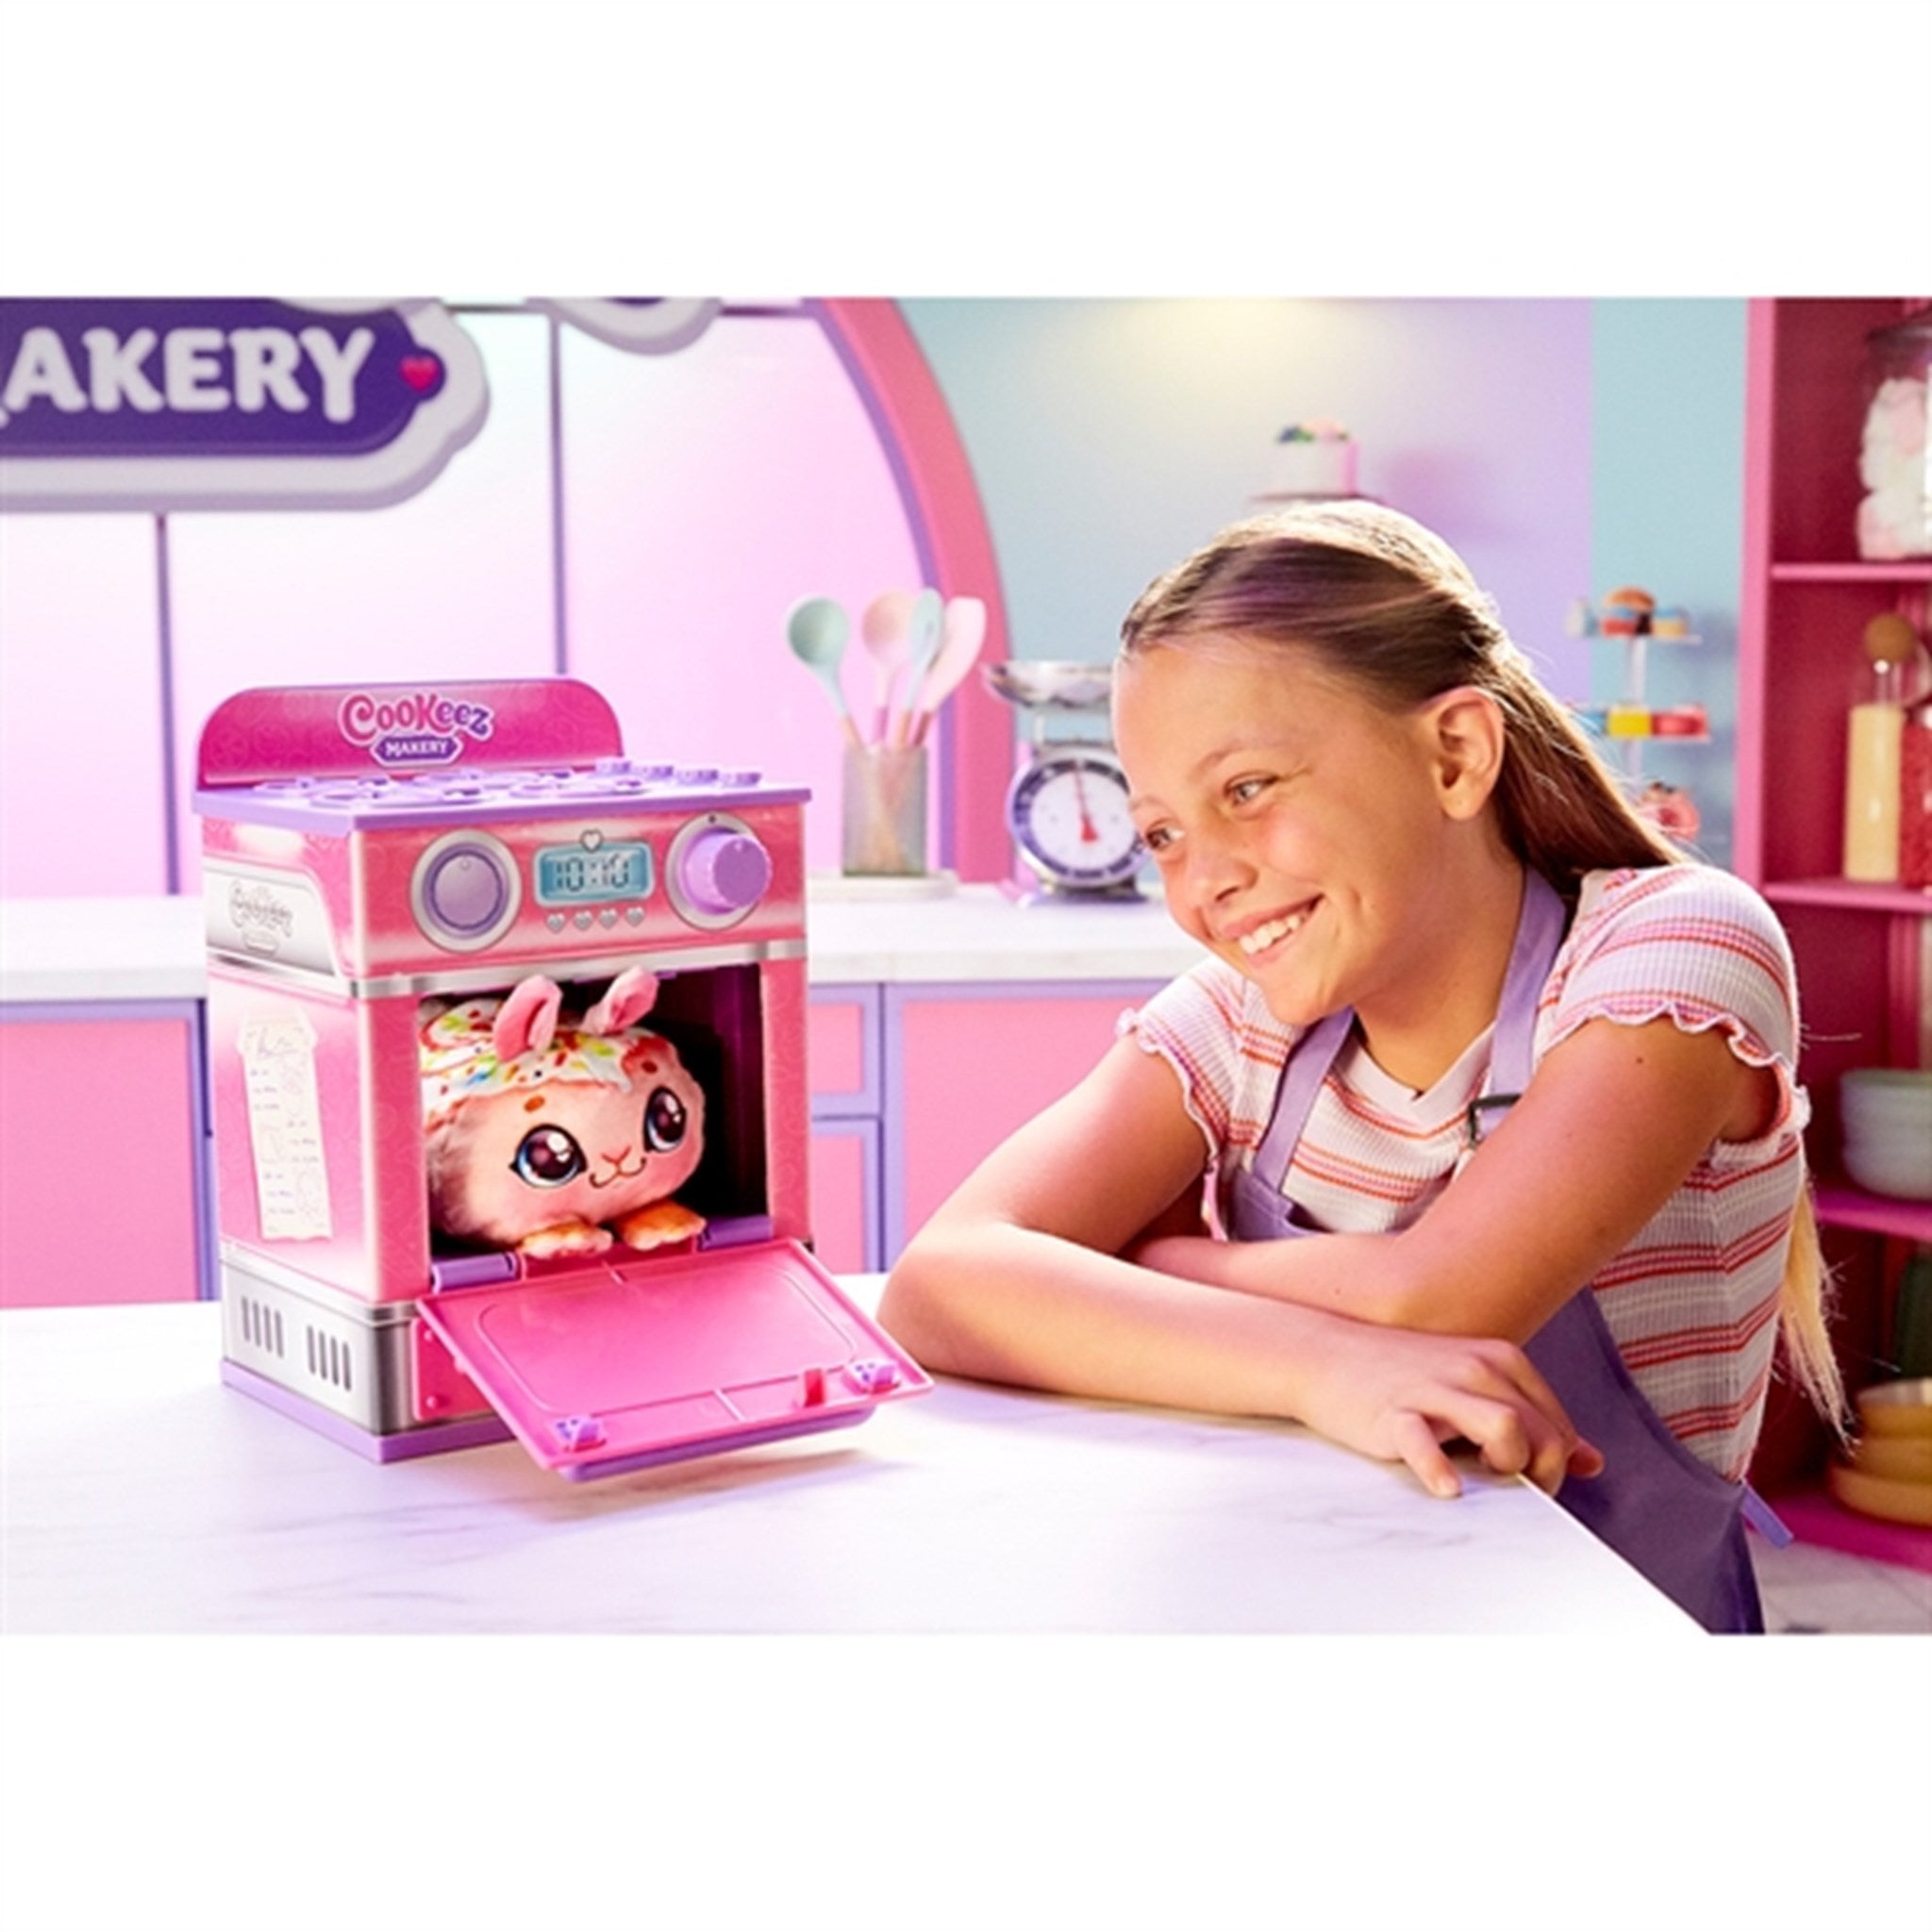 Cookeez Makery Oven Playset Cinnamon 3